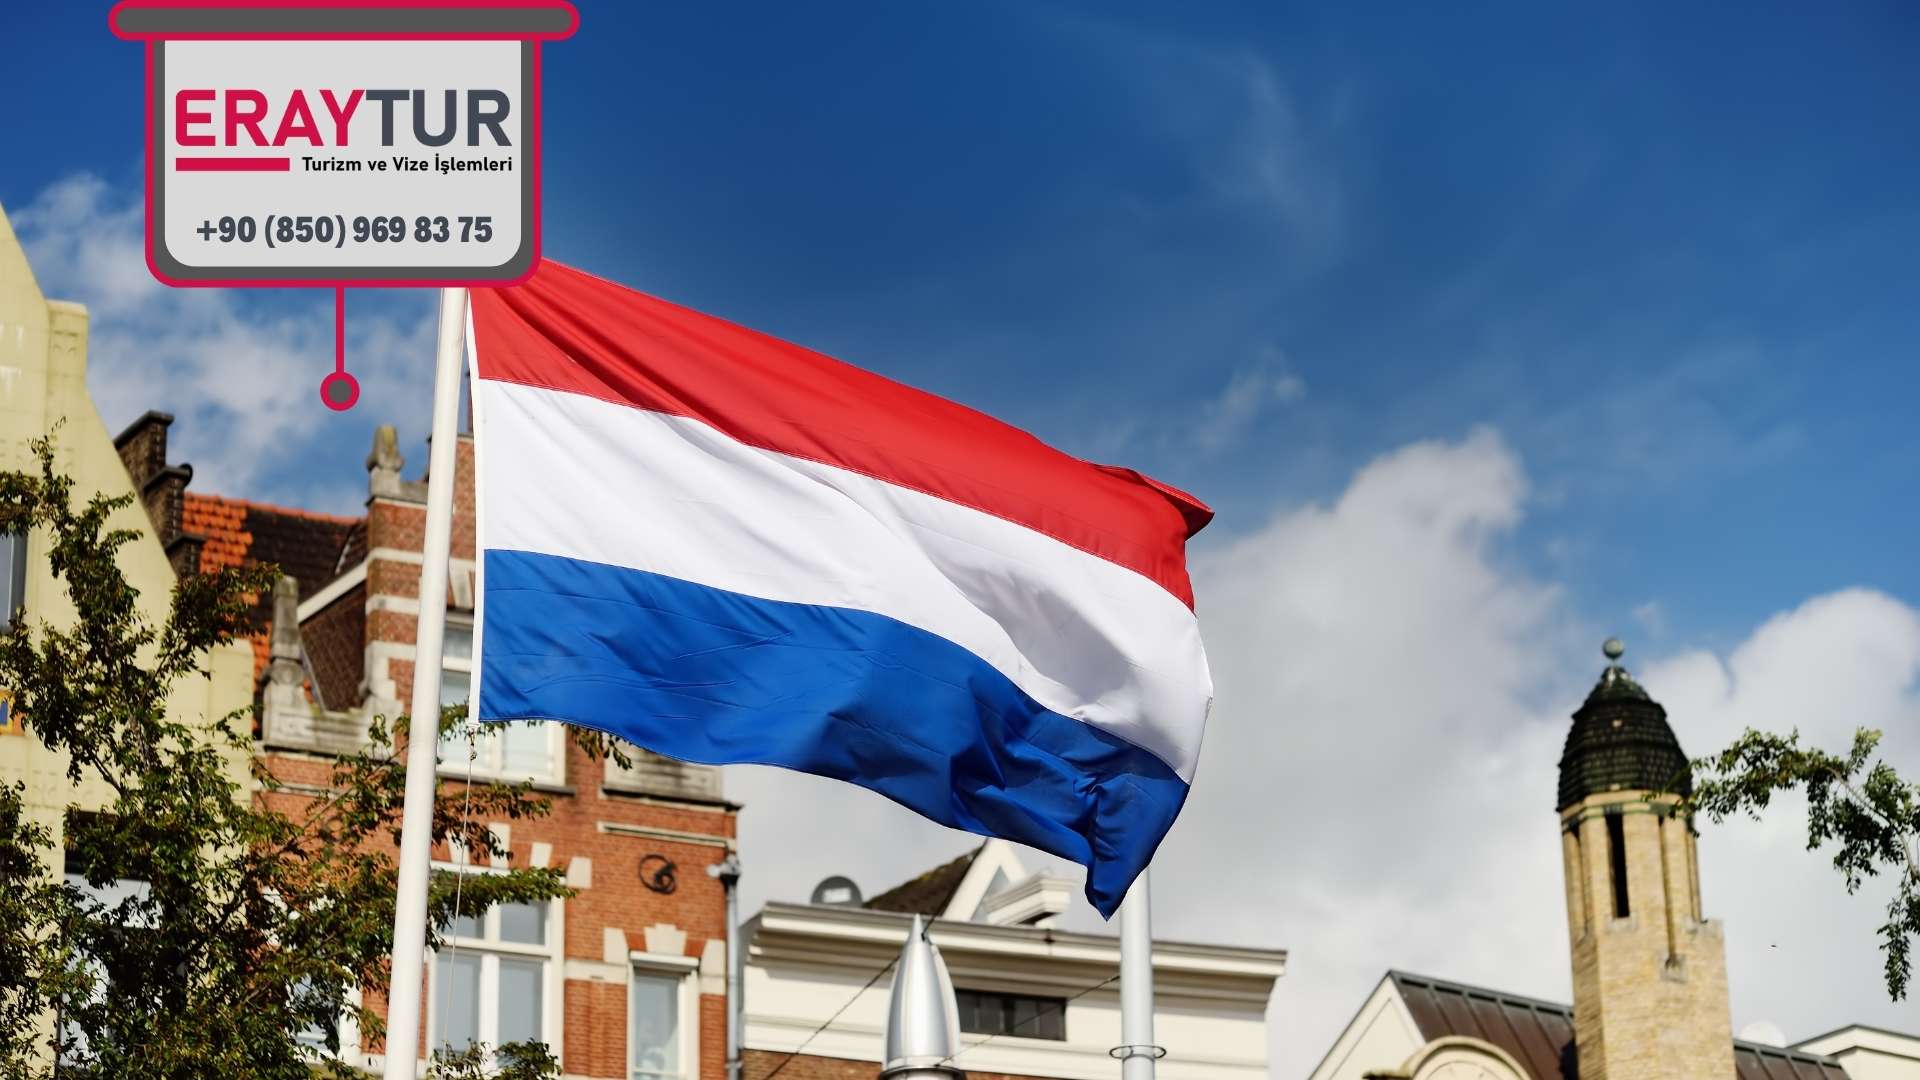 Hollanda Turistik Vize İşsiz Evrakları